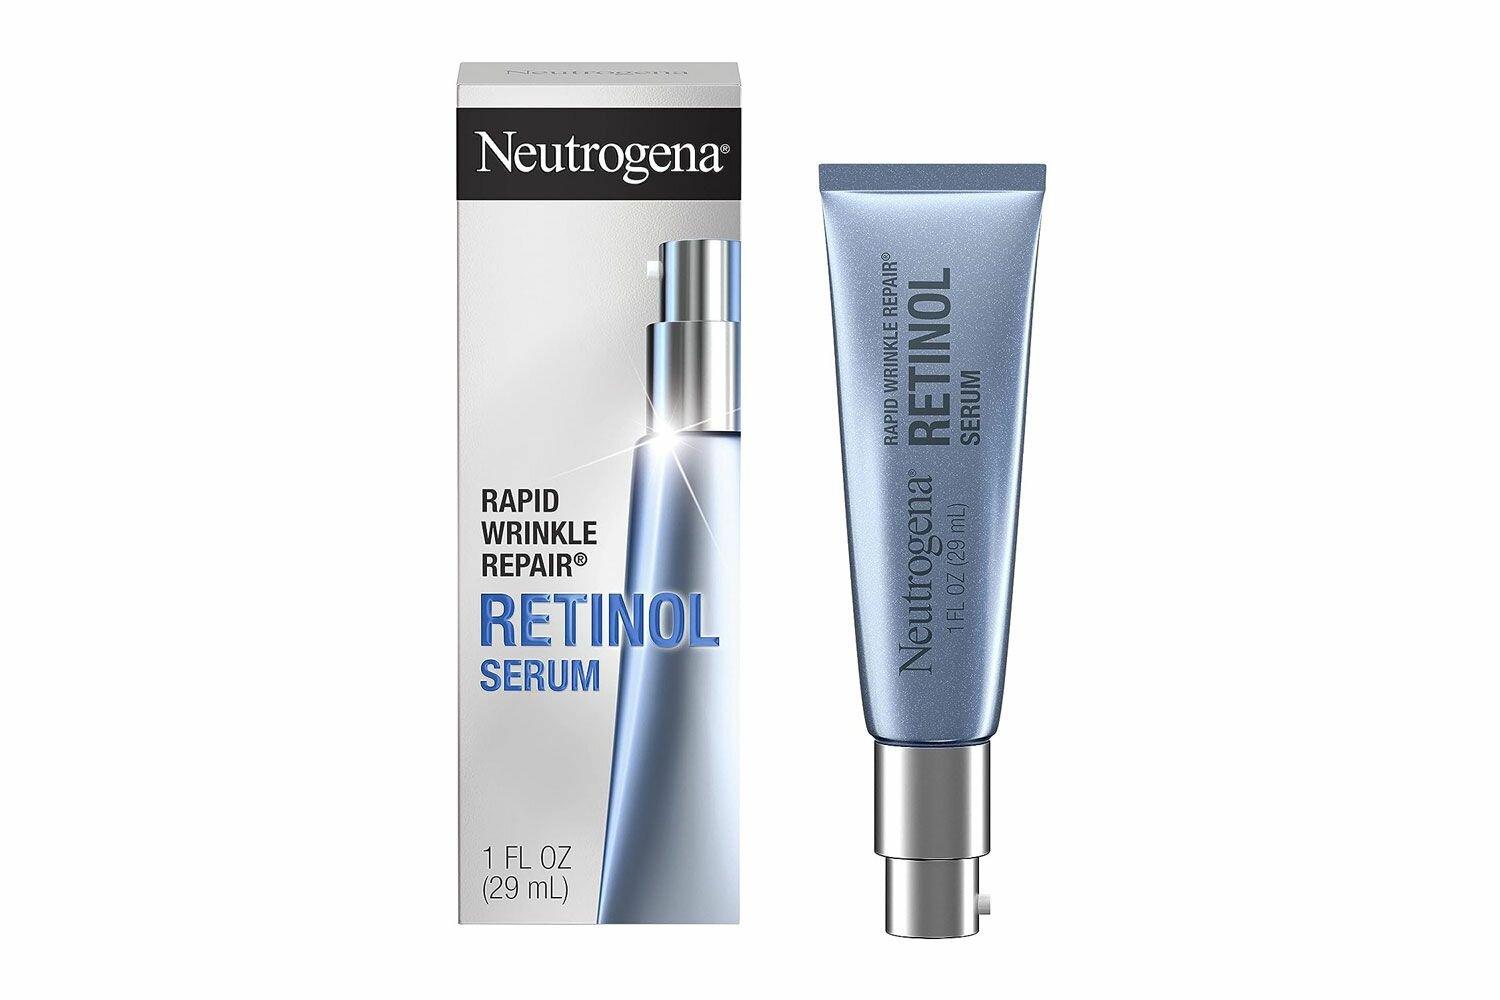  Neutrogena Rapid Wrinkle Repair Retinol Anti-Wrinkle Face